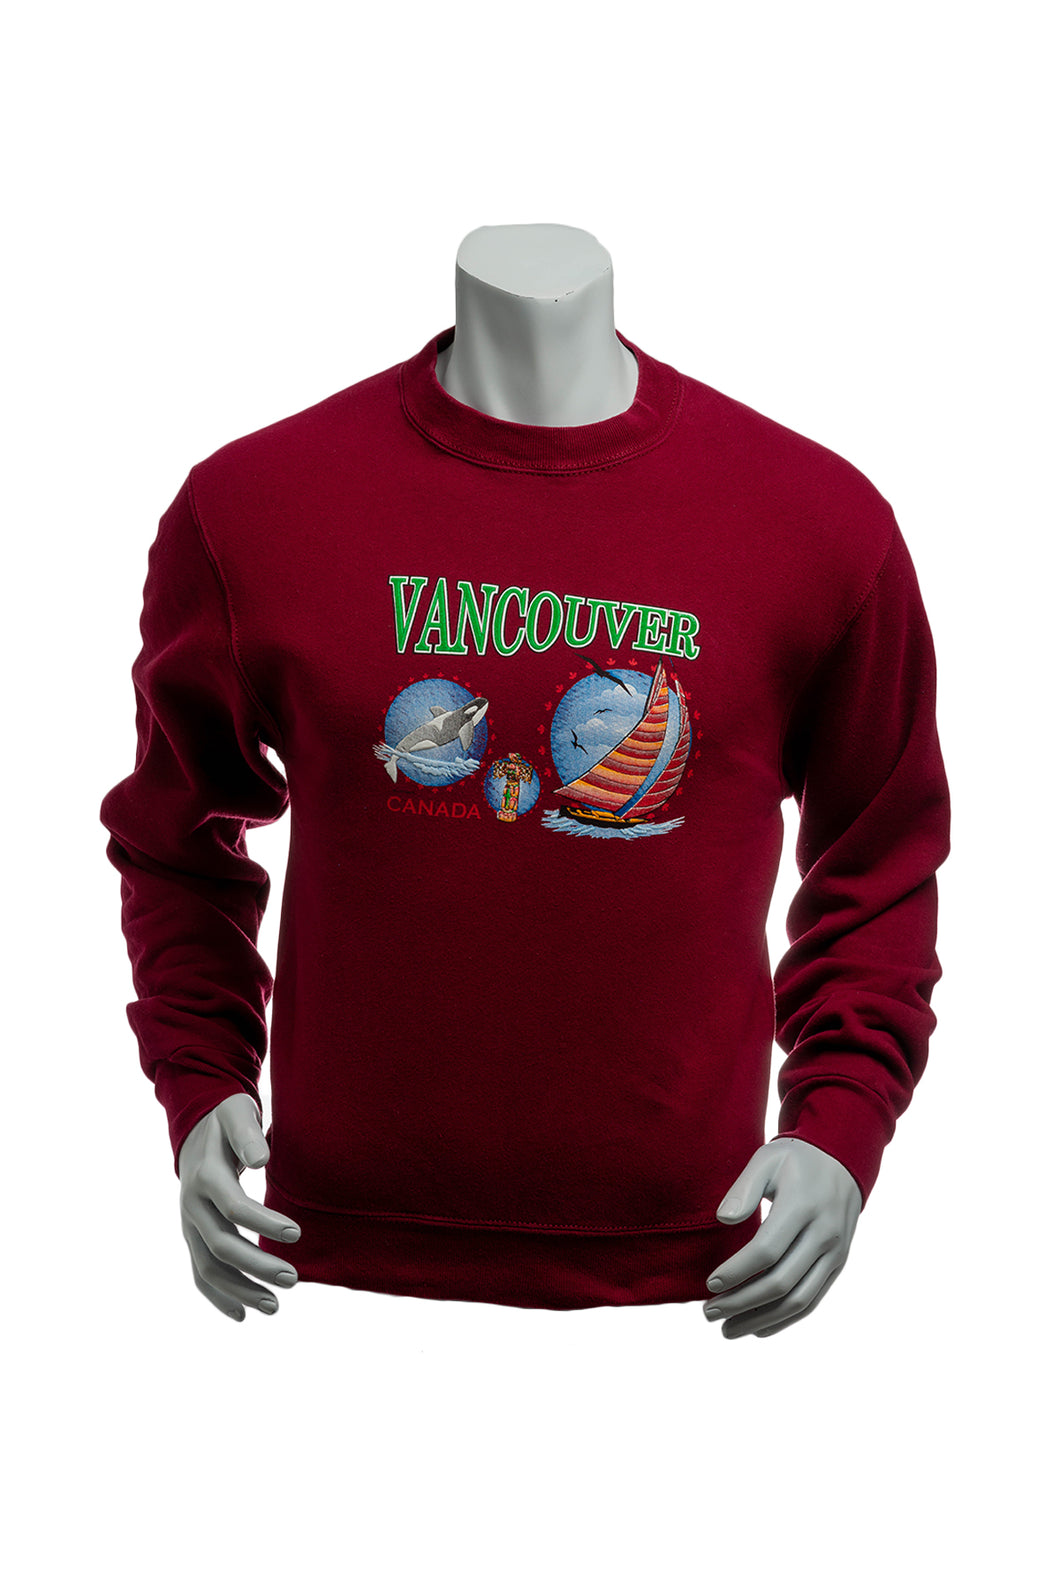 Vintage 80's Vancouver, BC, Canada Sweatshirt Men's Small